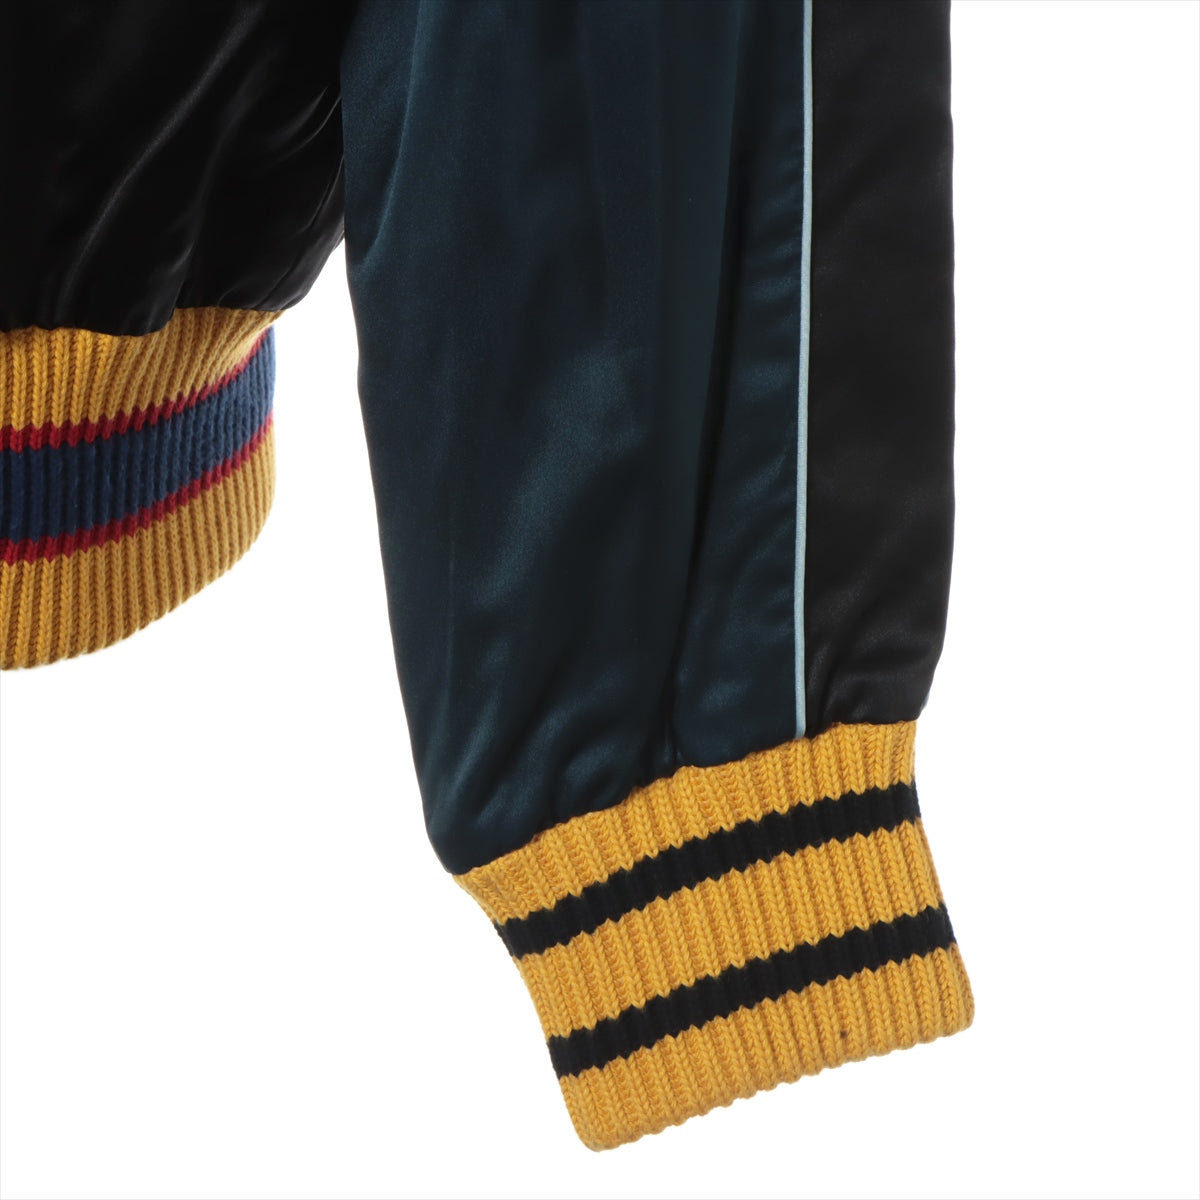 Gucci Rayon × Silk Stadium jumper 52 Men's Black x Navy  429485 2016 Embroidery Souvenir Jacket embroidery souvenir